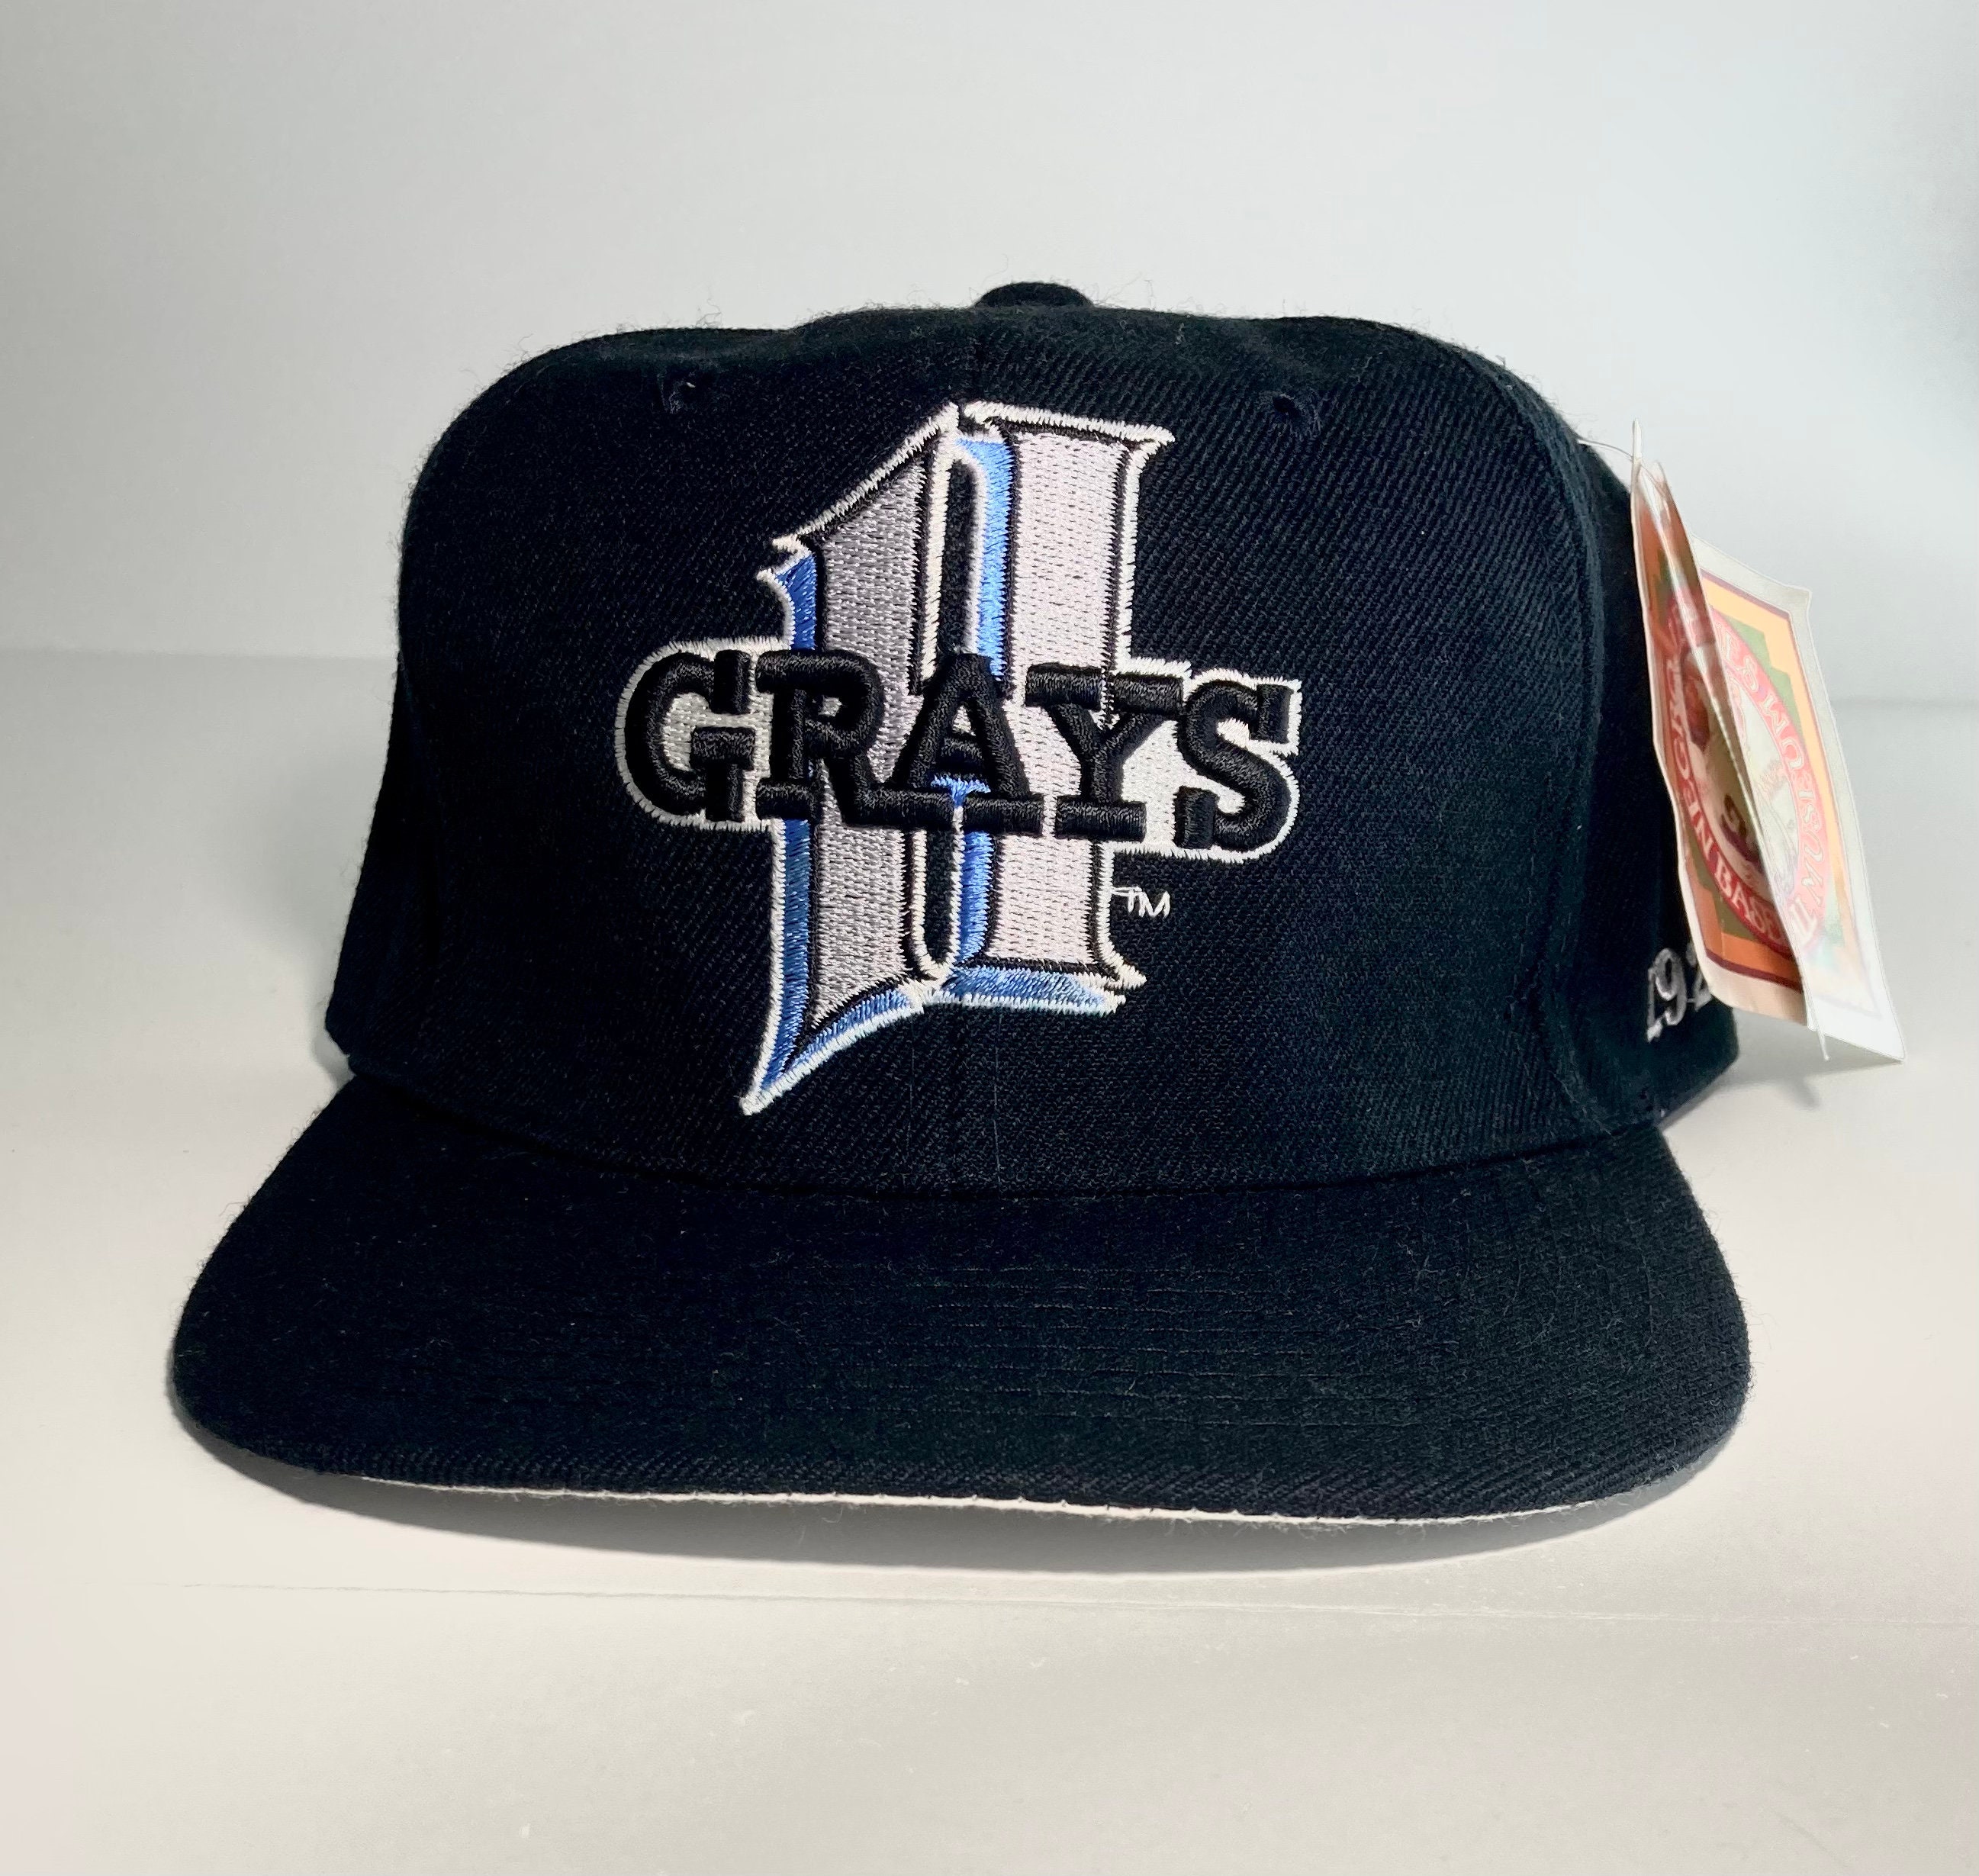 Homestead grays Vintage 1990s Negro League Baseball Medium 